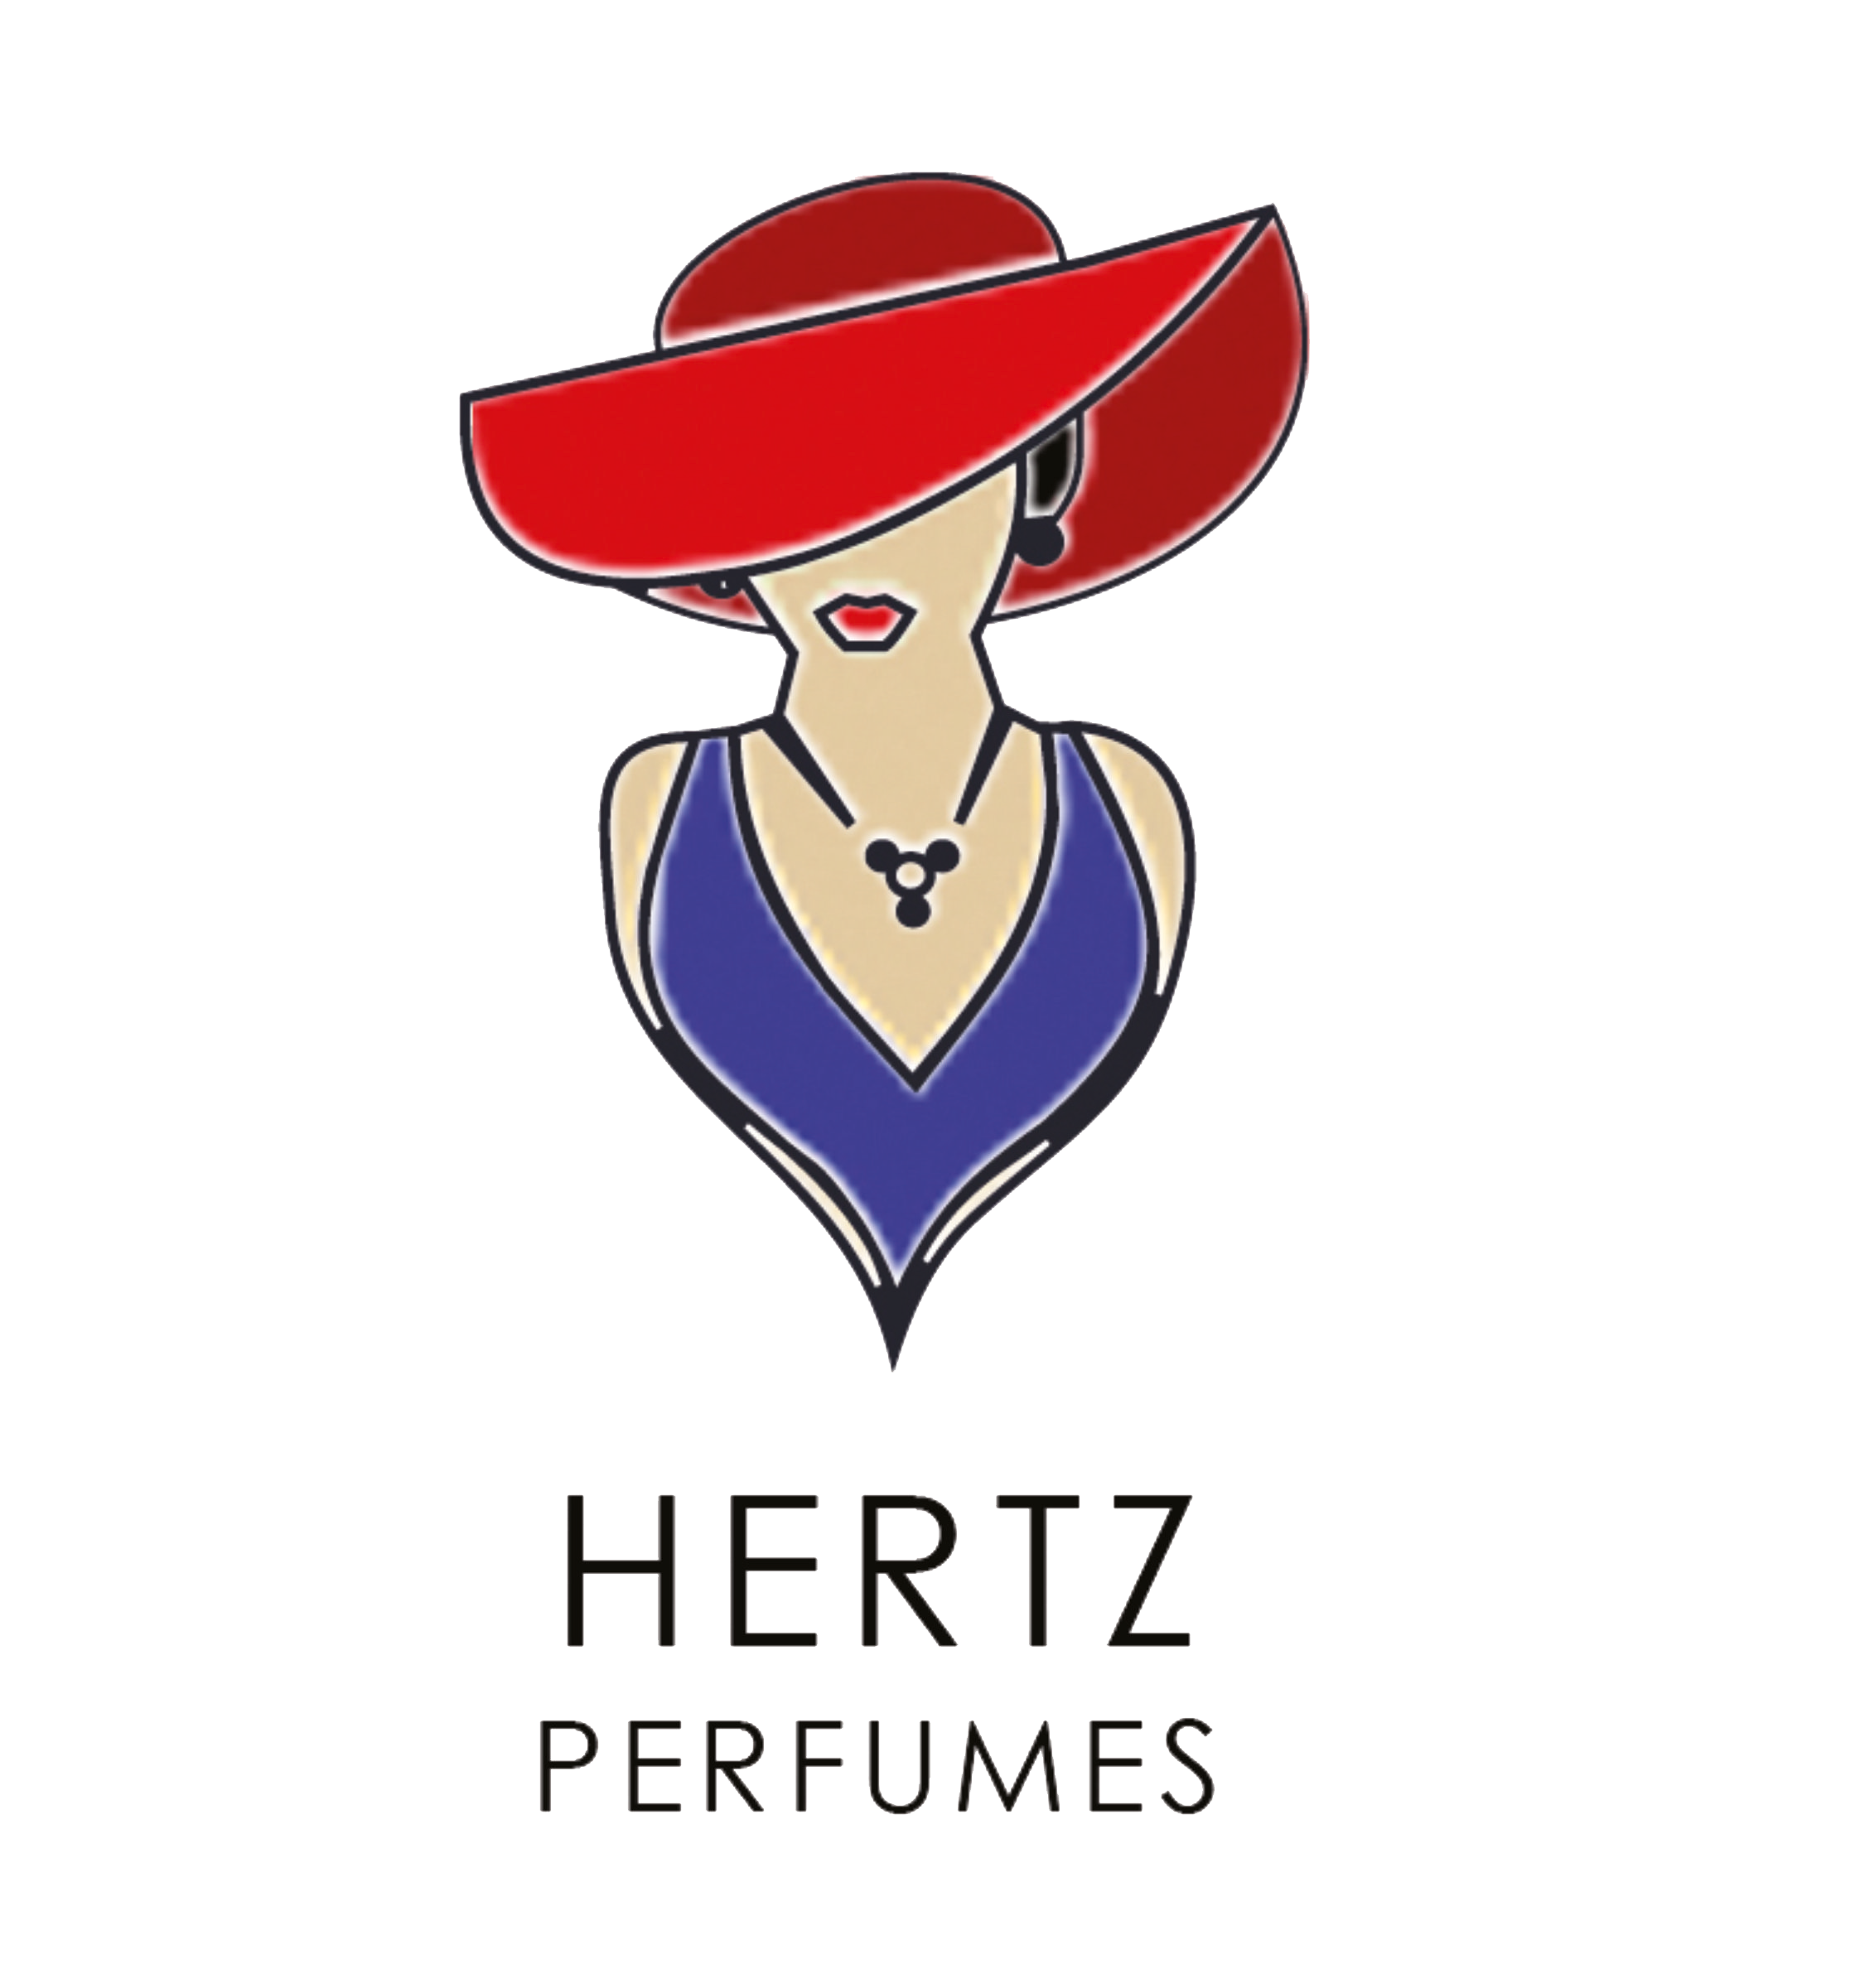 Hertz Perfumes & Cosmetics